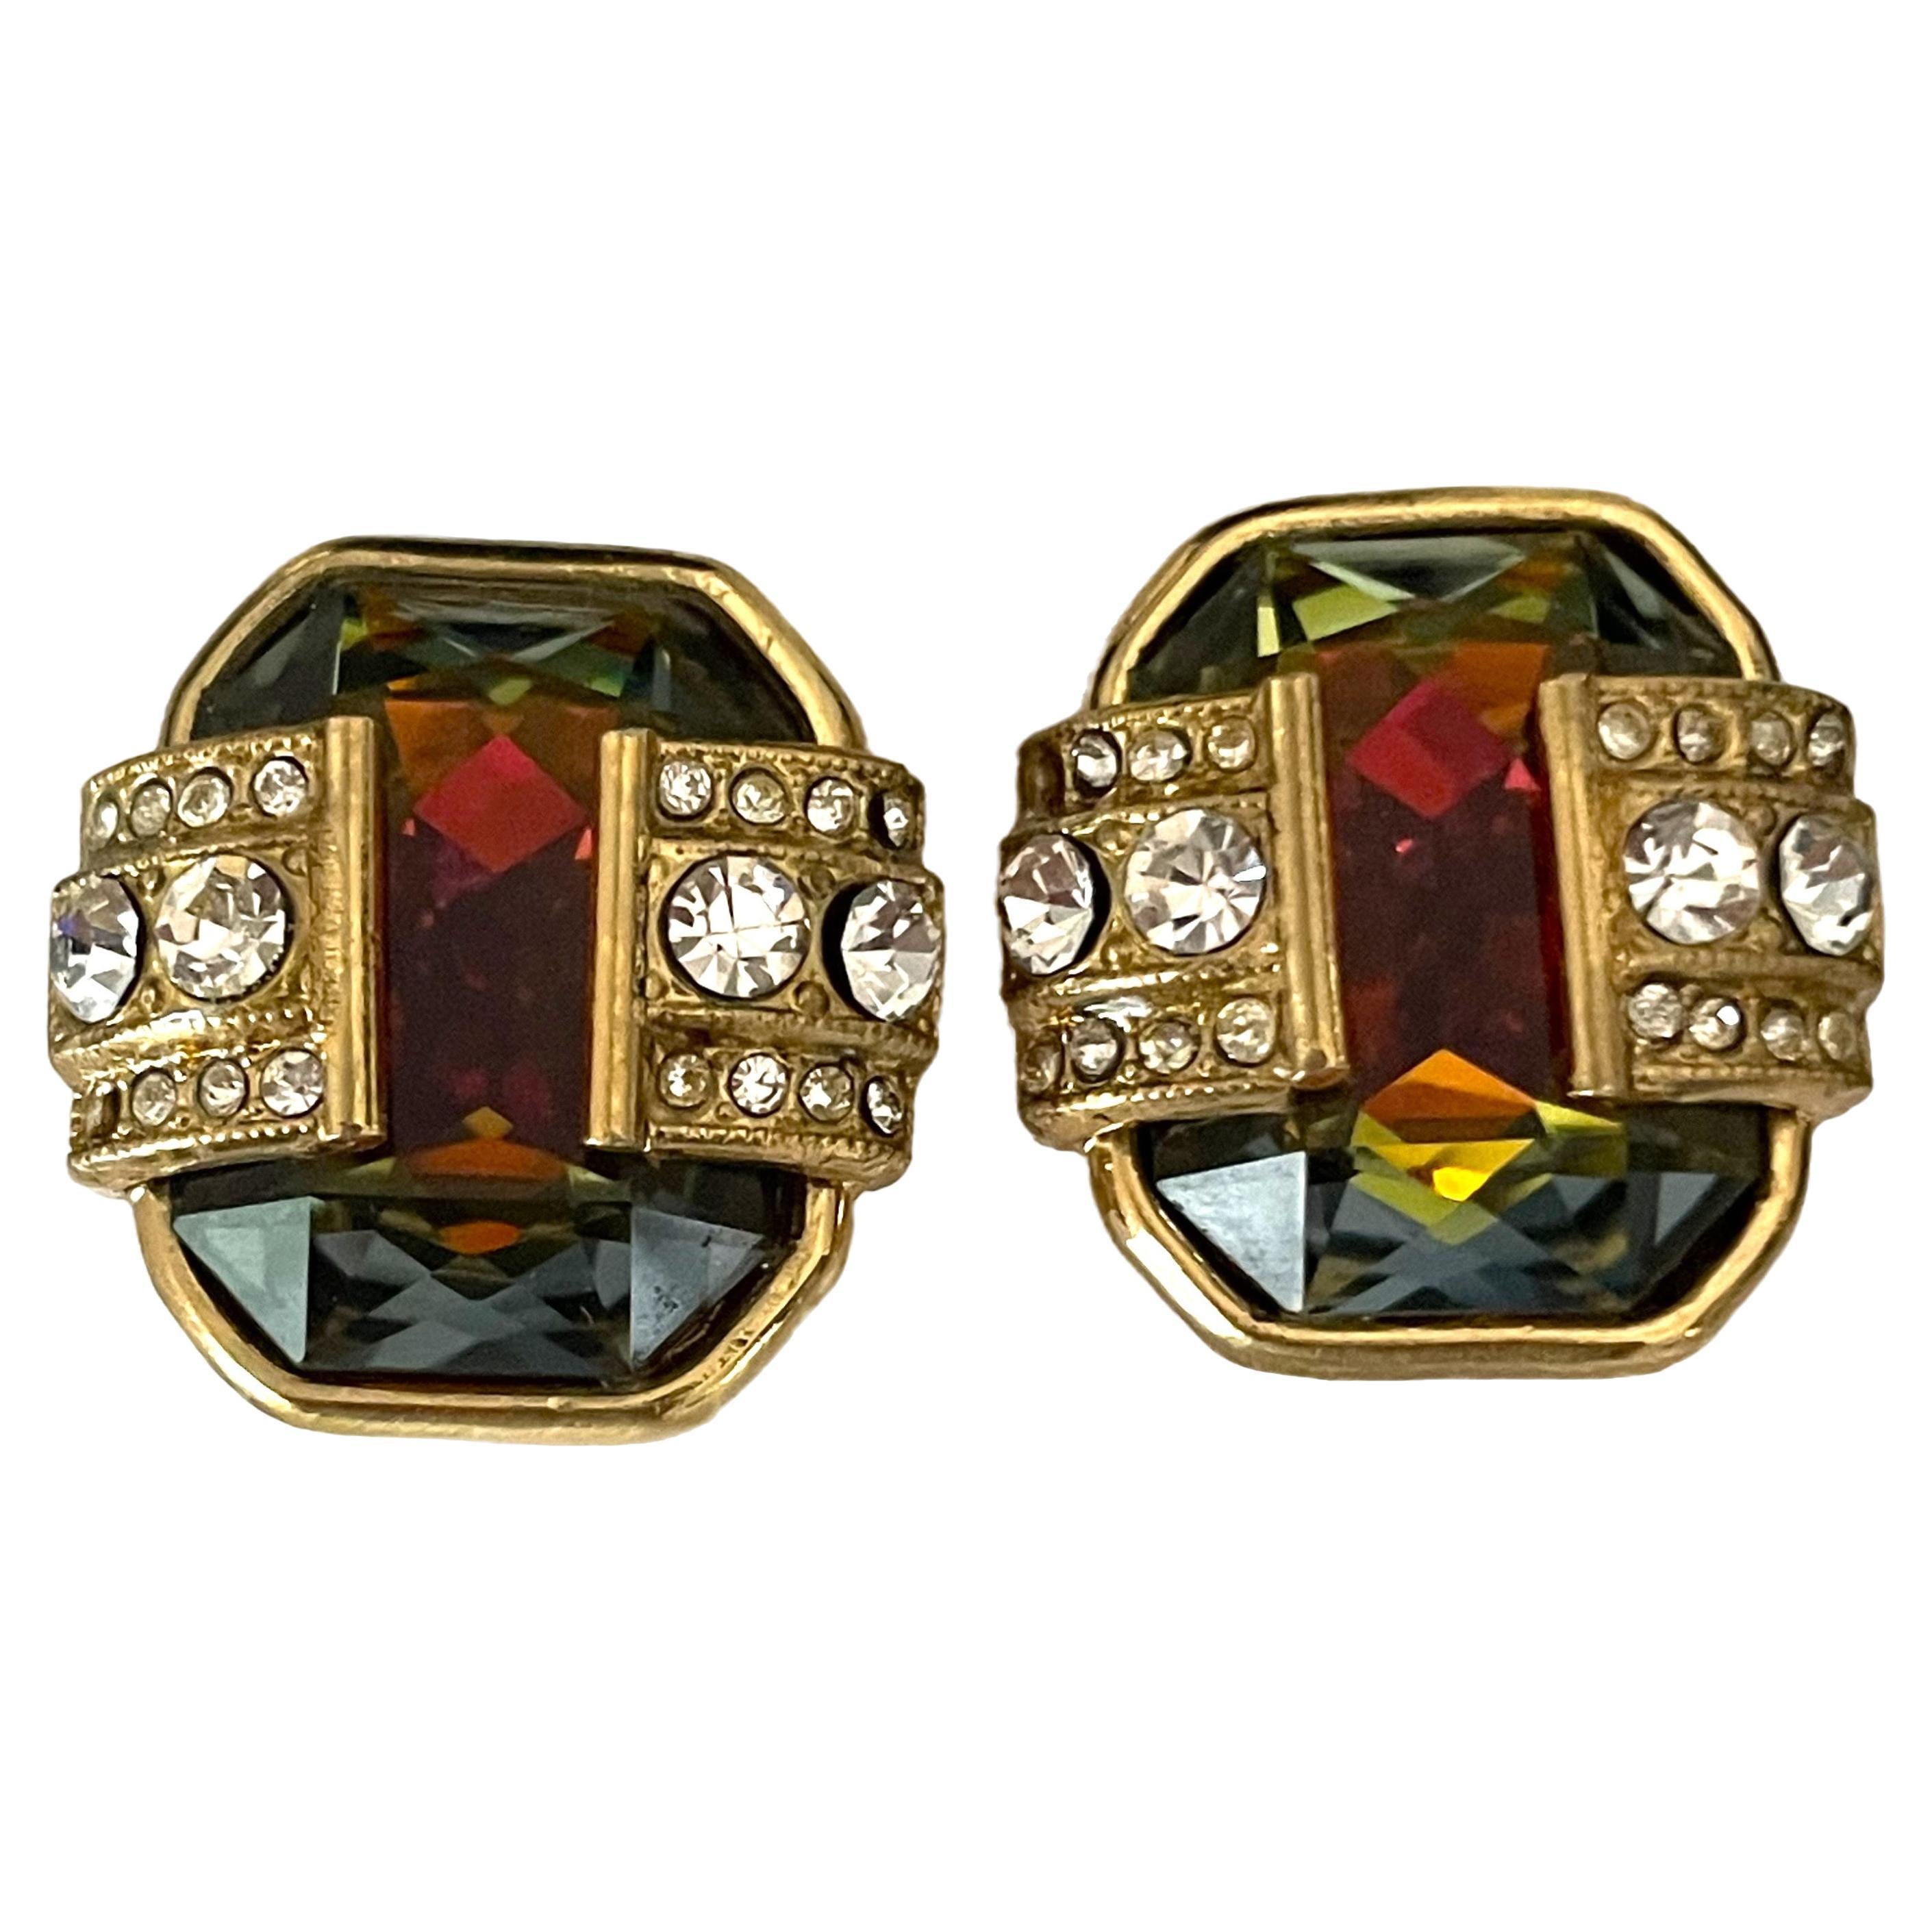 Sehr seltene 90er Jahre Gianfranco Ferré goldplattierte Ohrringe mit schönen Farben. Ein echtes Glanzstück, das Modernität mit klassischer Eleganz verbindet. Das schillernde und elegante Design mit einem Hauch von Glamour und Raffinesse spiegelt